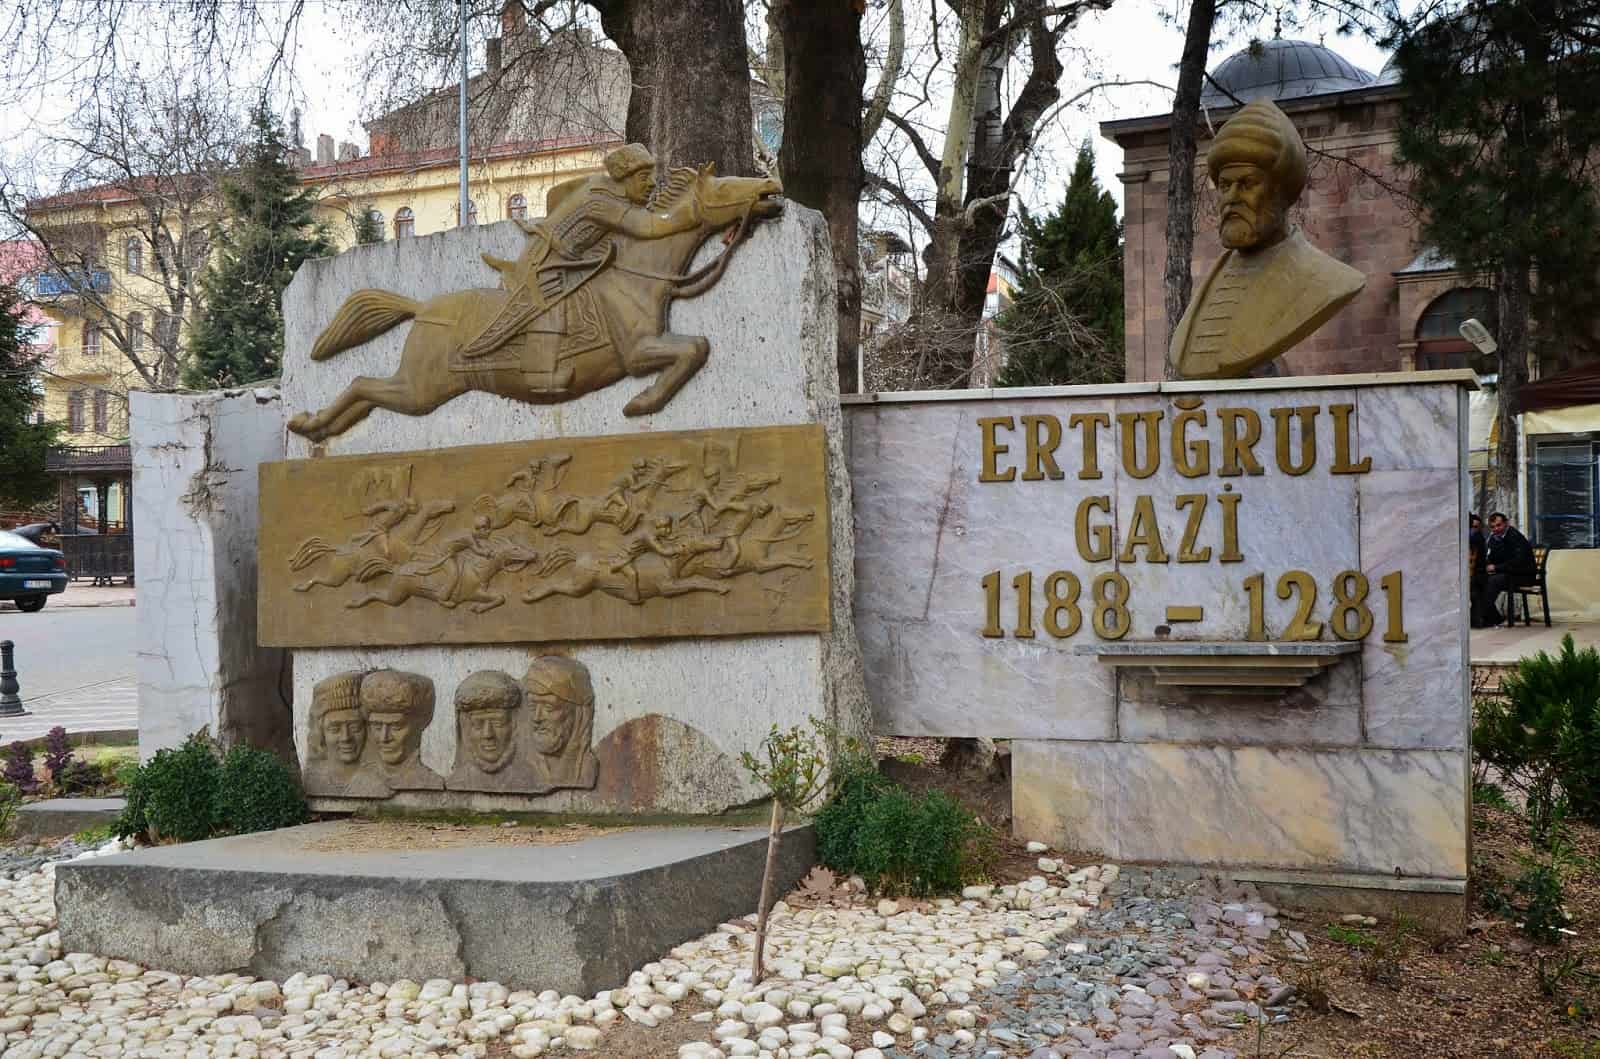 Ertuğrul Gazi monument in Söğüt, Turkey